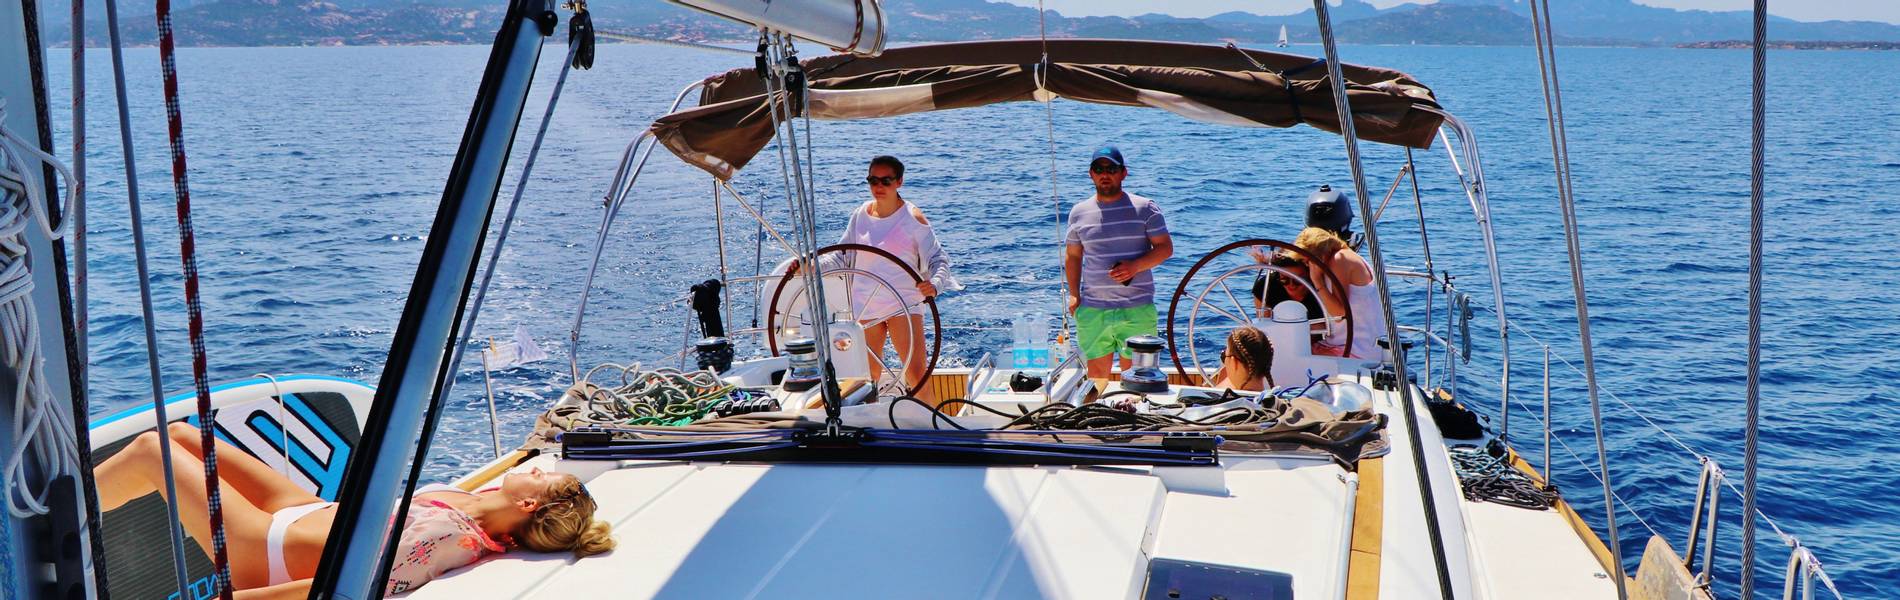 Bareboat Yacht Charter Holidays Sailing Holidays 